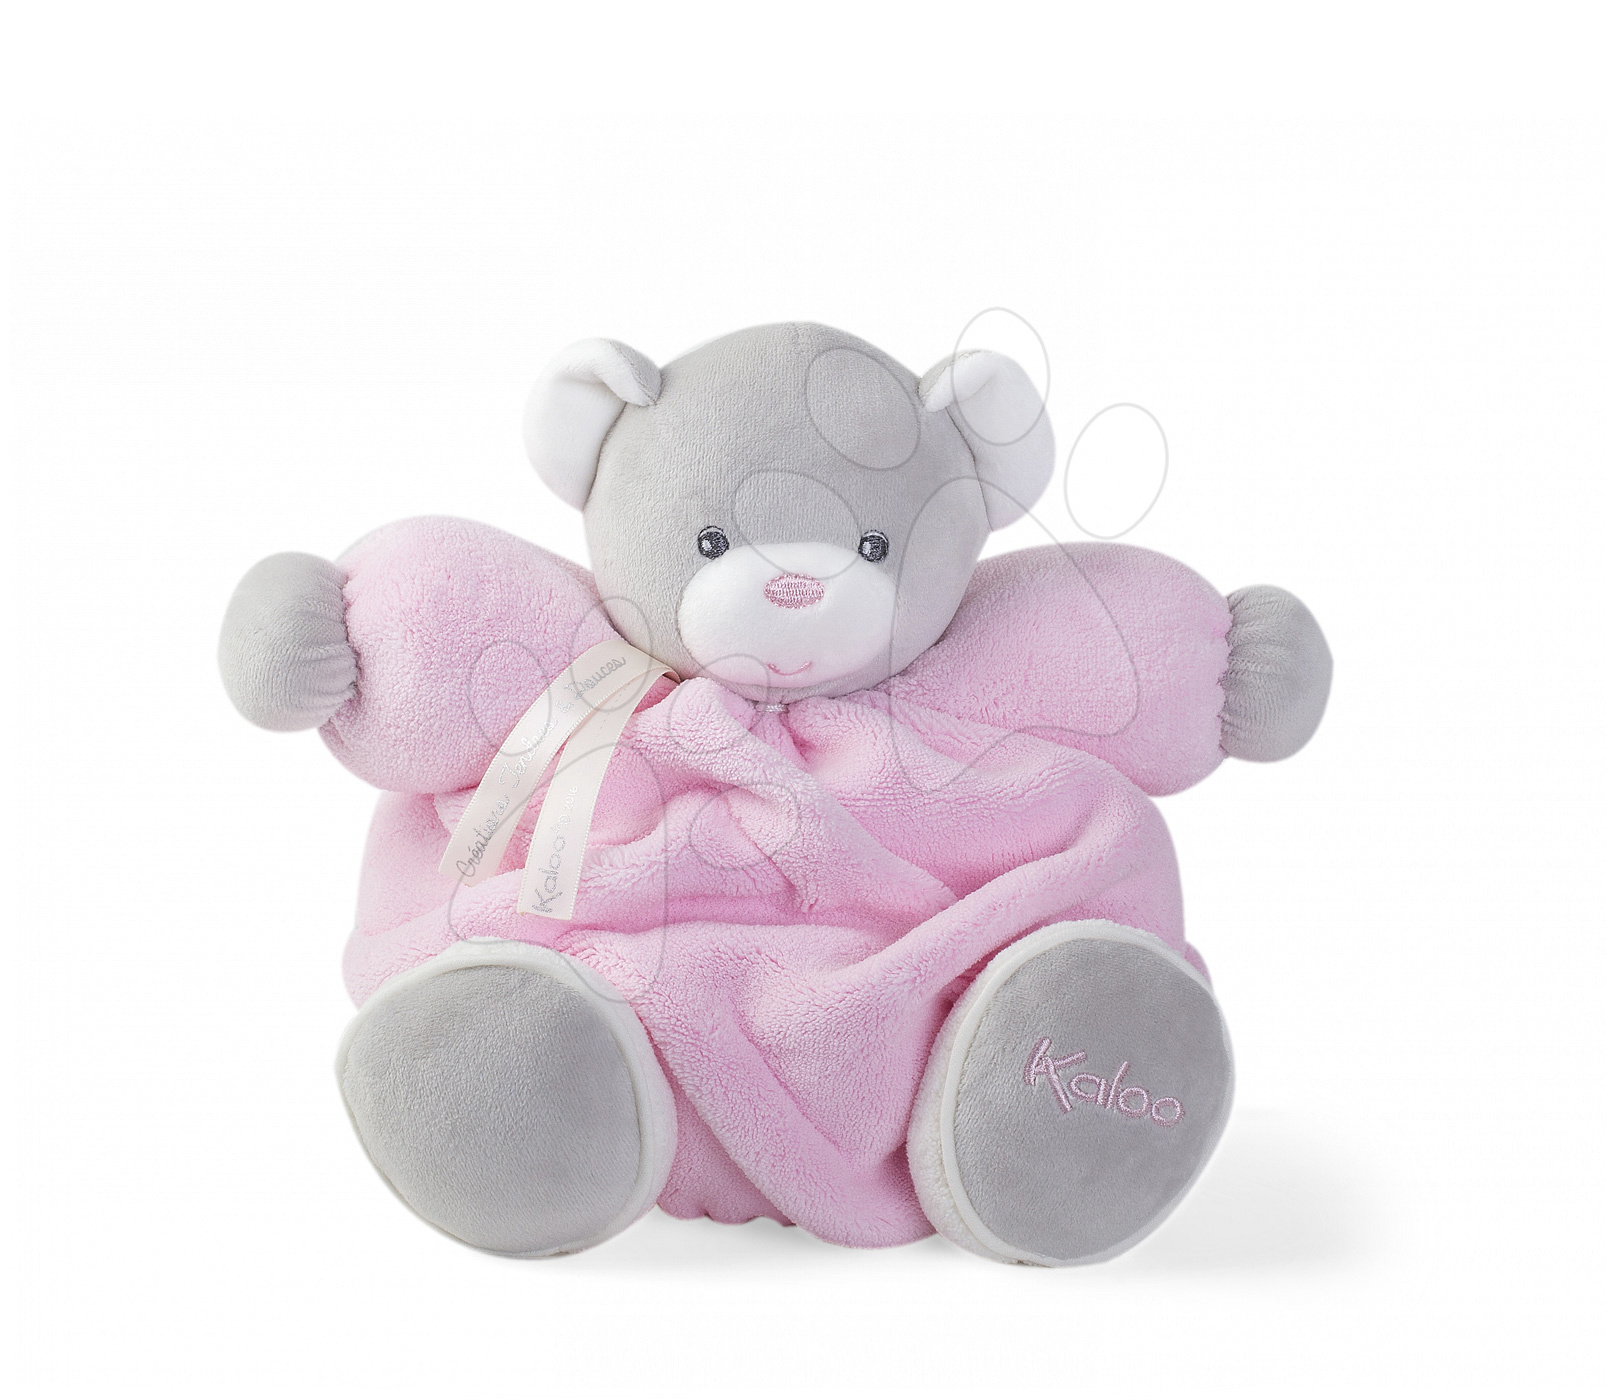 E-shop Kaloo plyšový medvedík Plume Chubby 25 cm 969556 ružový